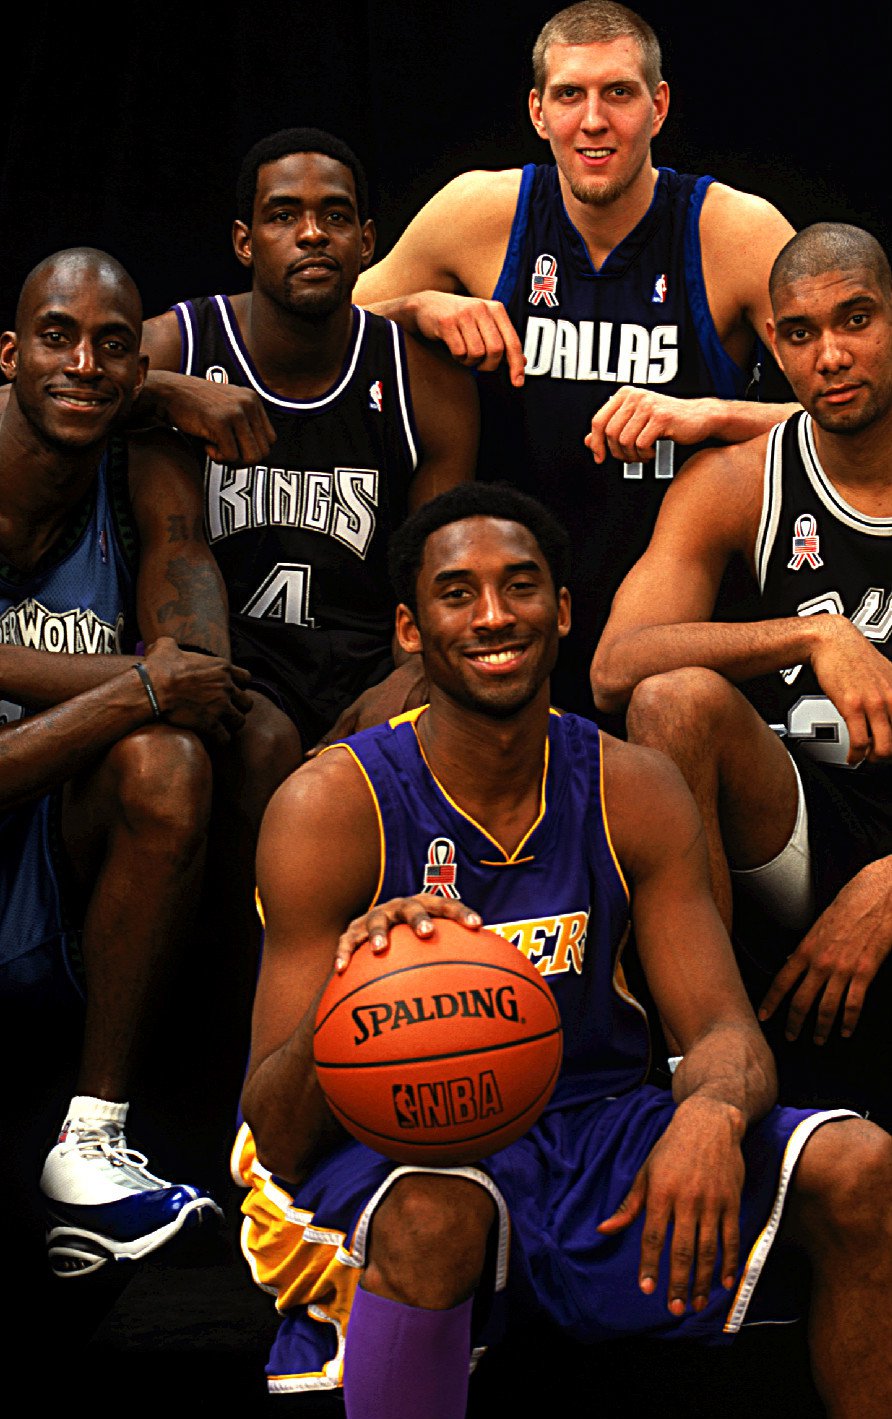 Fotografija: Kevin Garnett (levo), Kobe Bryant (v sredini) in Tim Duncan (desno) pred enim od skupnih nastopov na tekmah All-Star NBA. Zgoraj Chris Webber in Dirk Nowitzki. FOTO: NBA